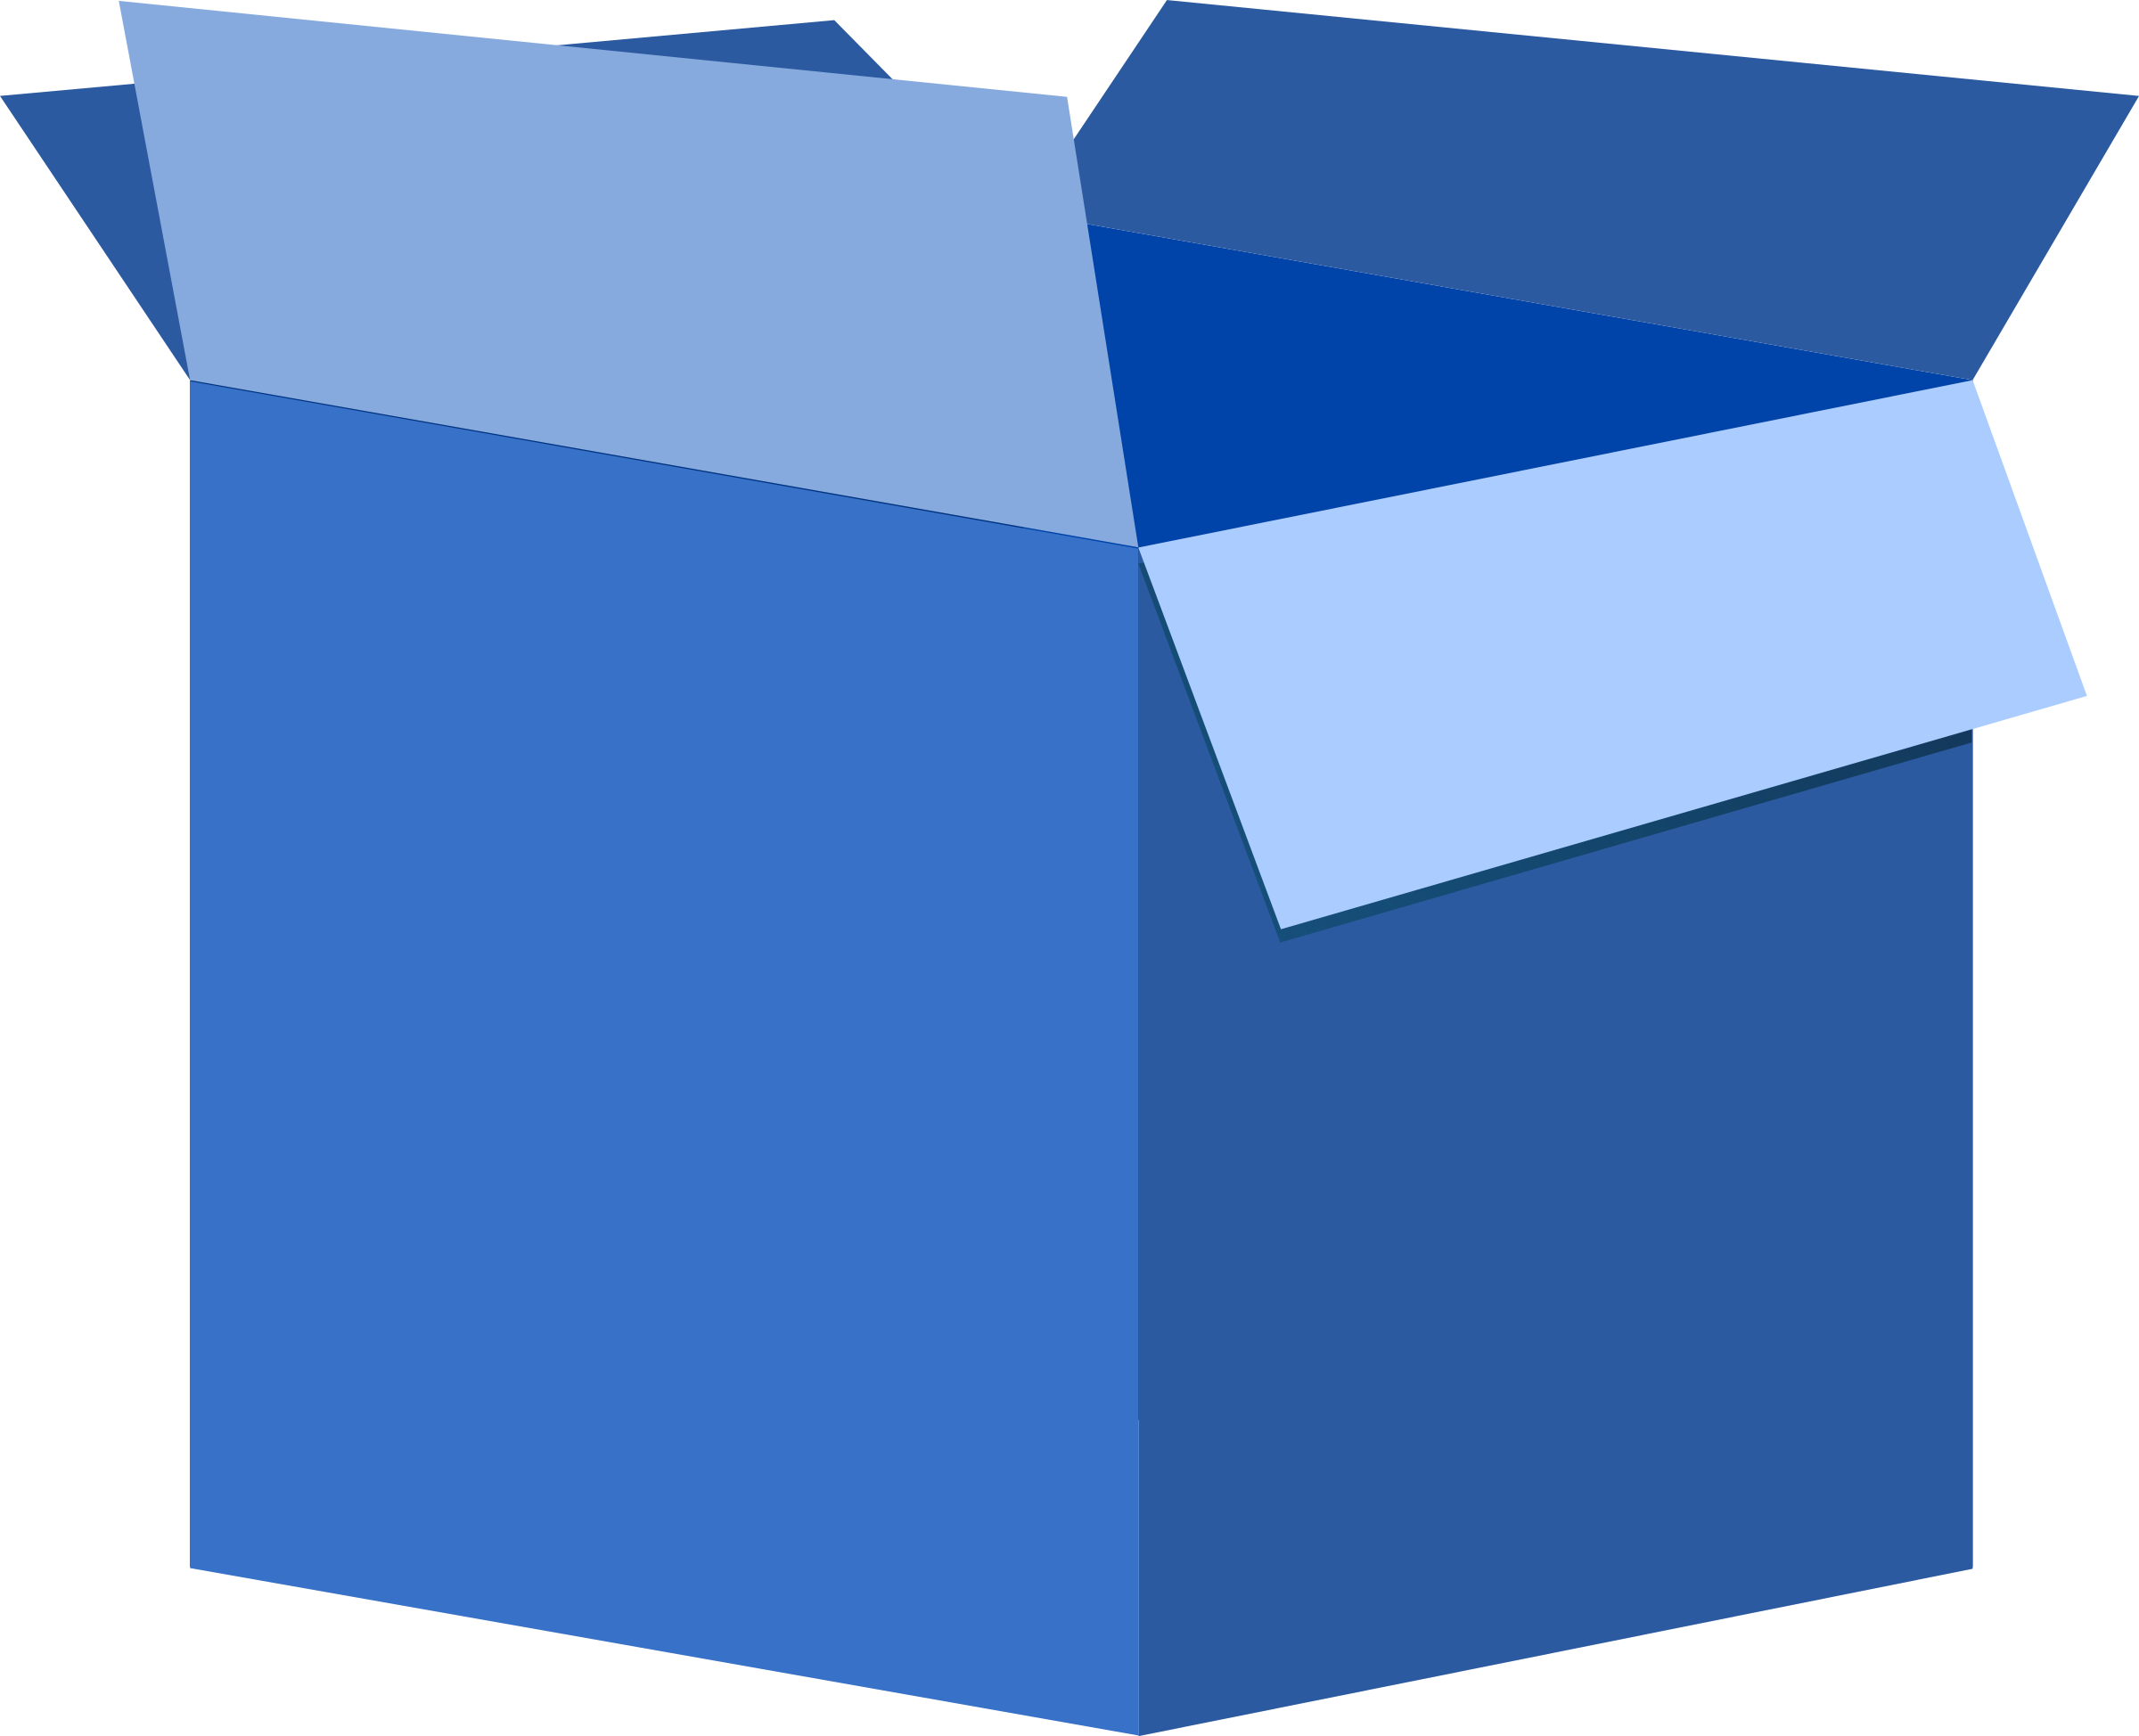 Close box. Blue Box (синяя коробка). Подарочные коробки синие. Открытая подарочная коробка. Коробка на прозрачном фоне.